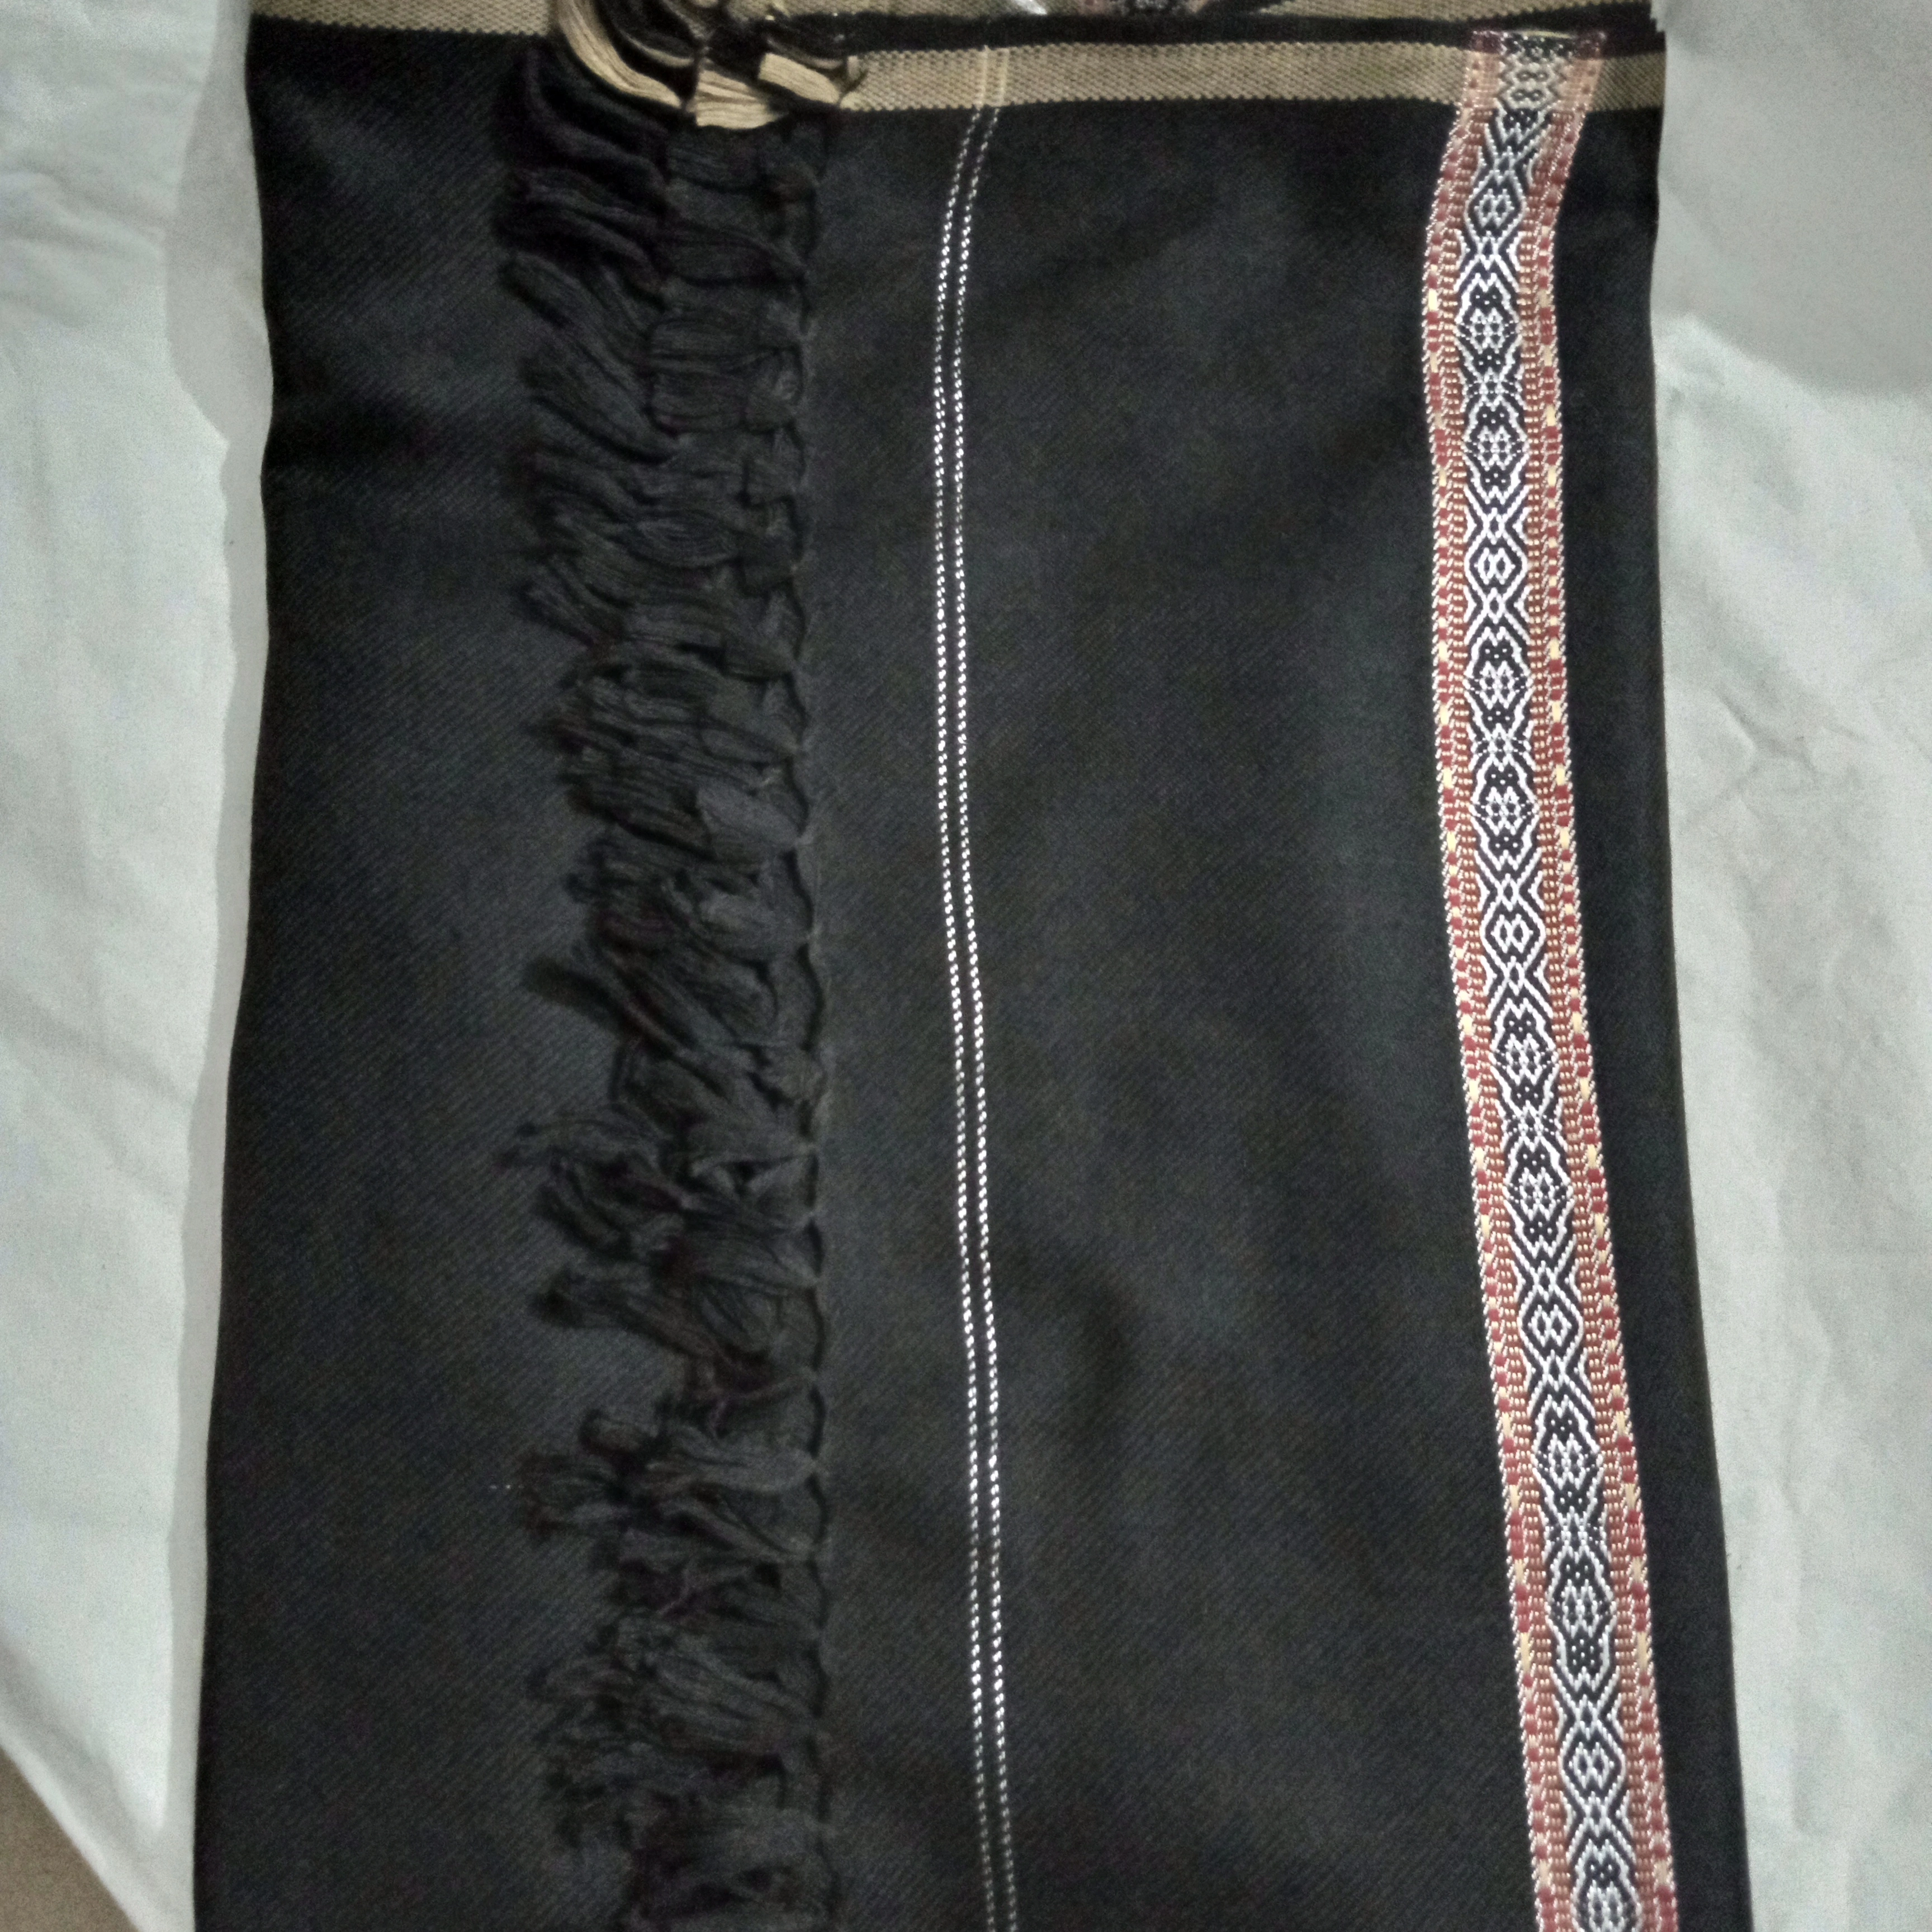 Third image of woollen black shawl.